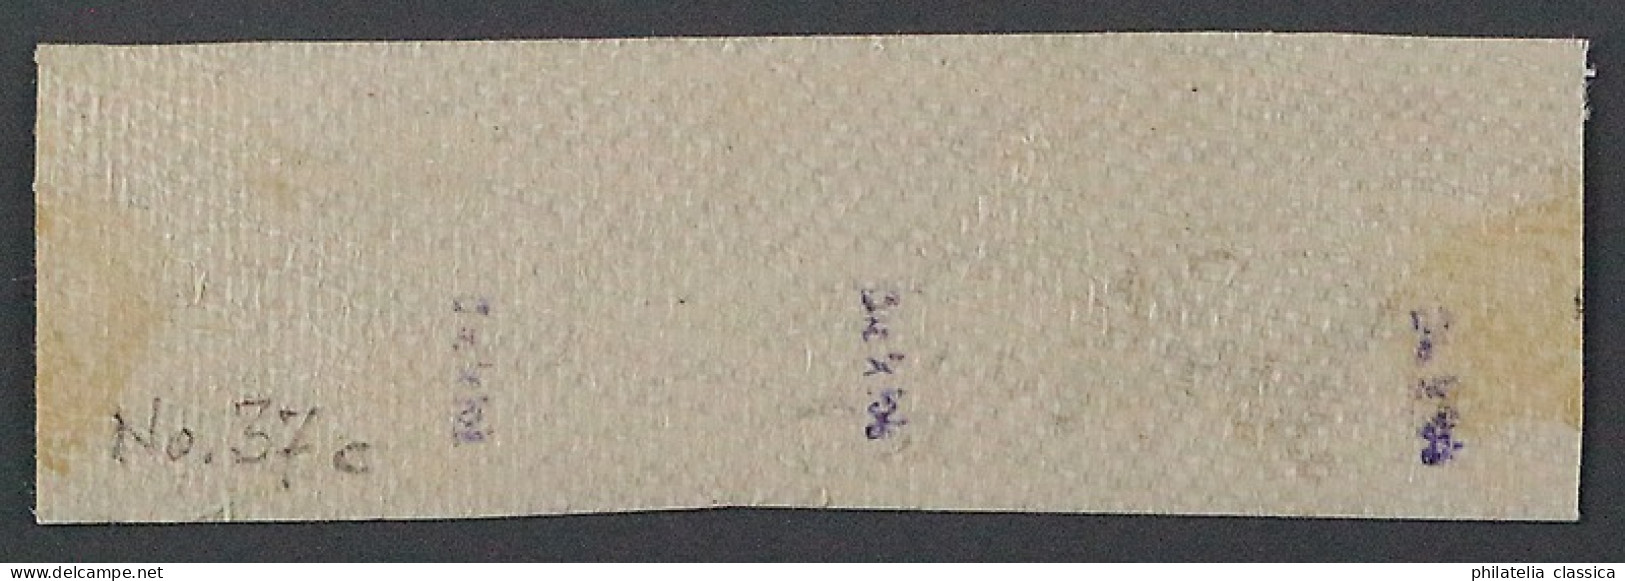 Dt.Post CHINA VORLÄUFER V 37 C, 2 Mk. Briefstück, DREIERSTREIFEN, Attest 2100,-€ - China (oficinas)